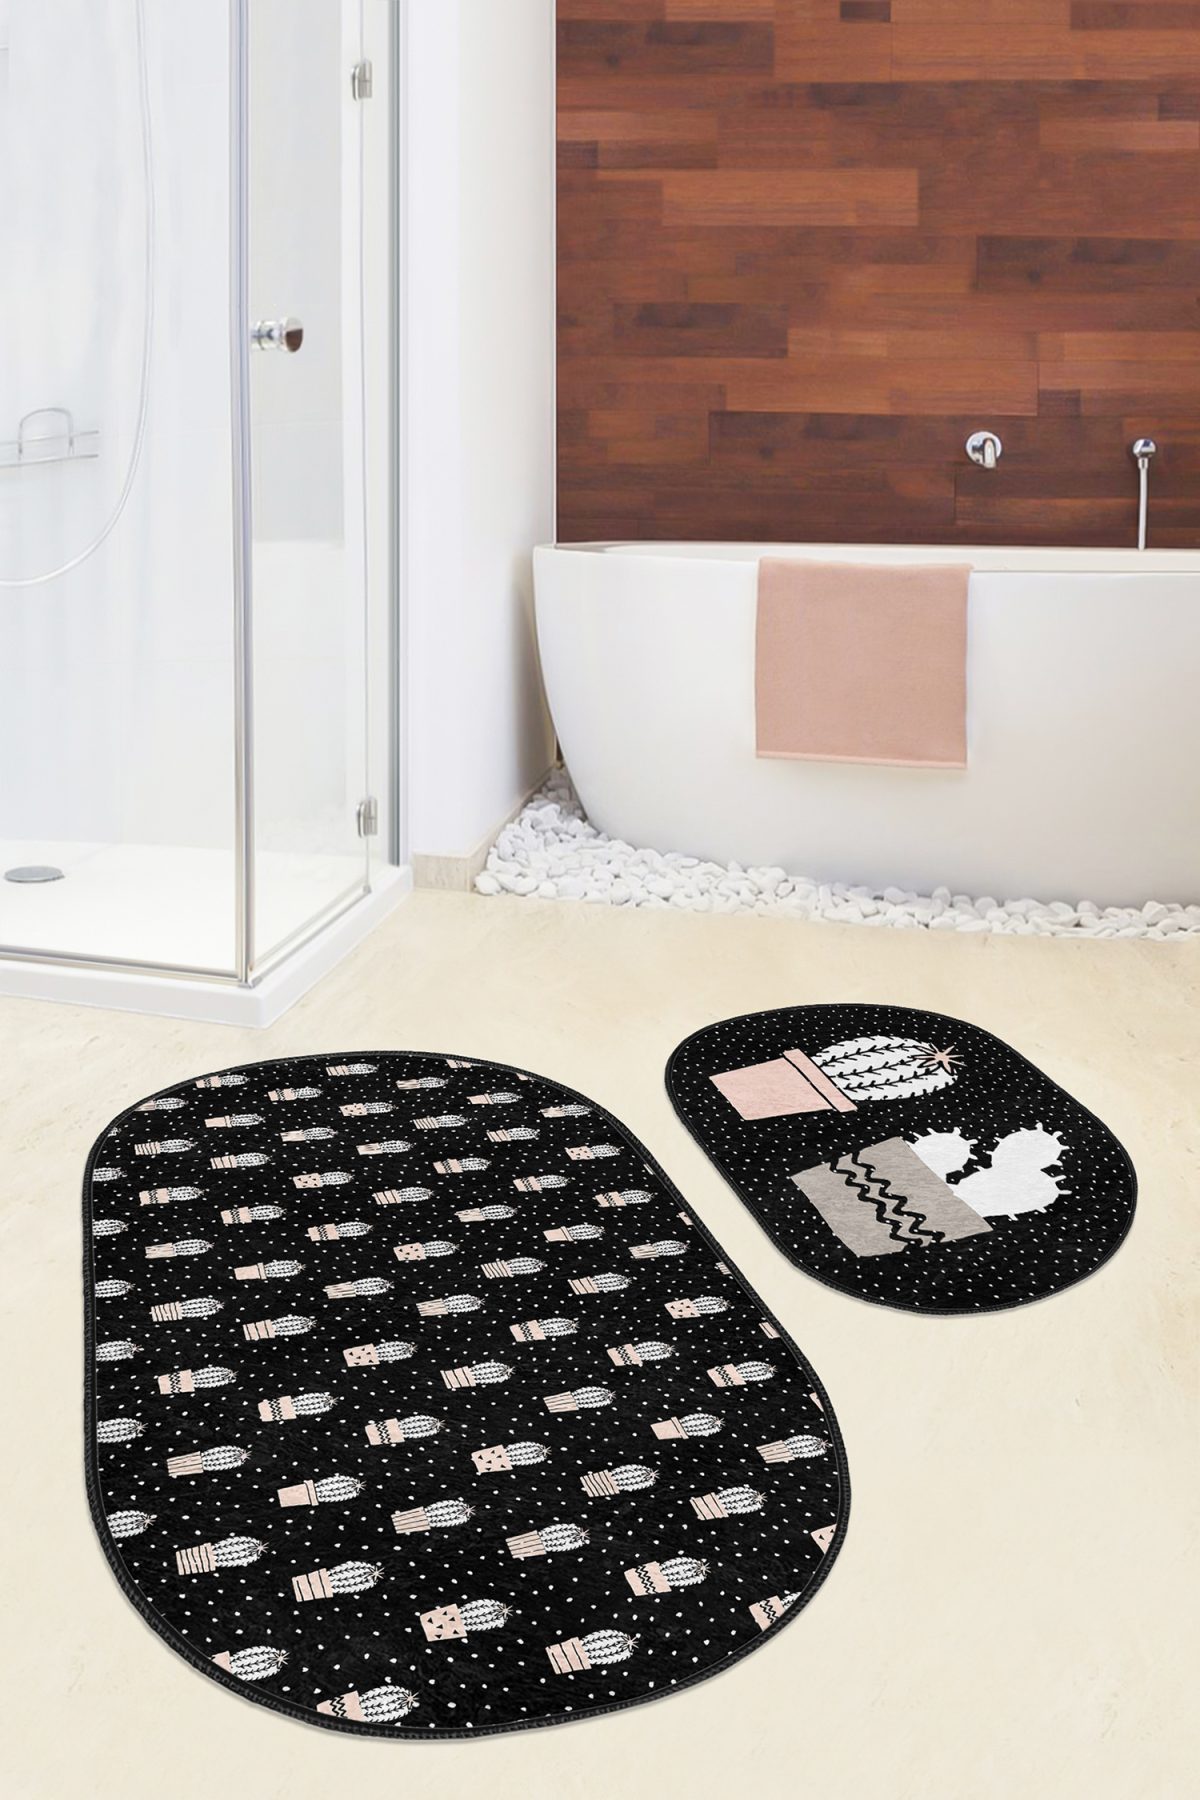 Siyah Zemin Puantiyeli Kaktüs Tasarımlı 2'li Oval Kaymaz Tabanlı Banyo & Mutfak Paspas Takımı Realhomes